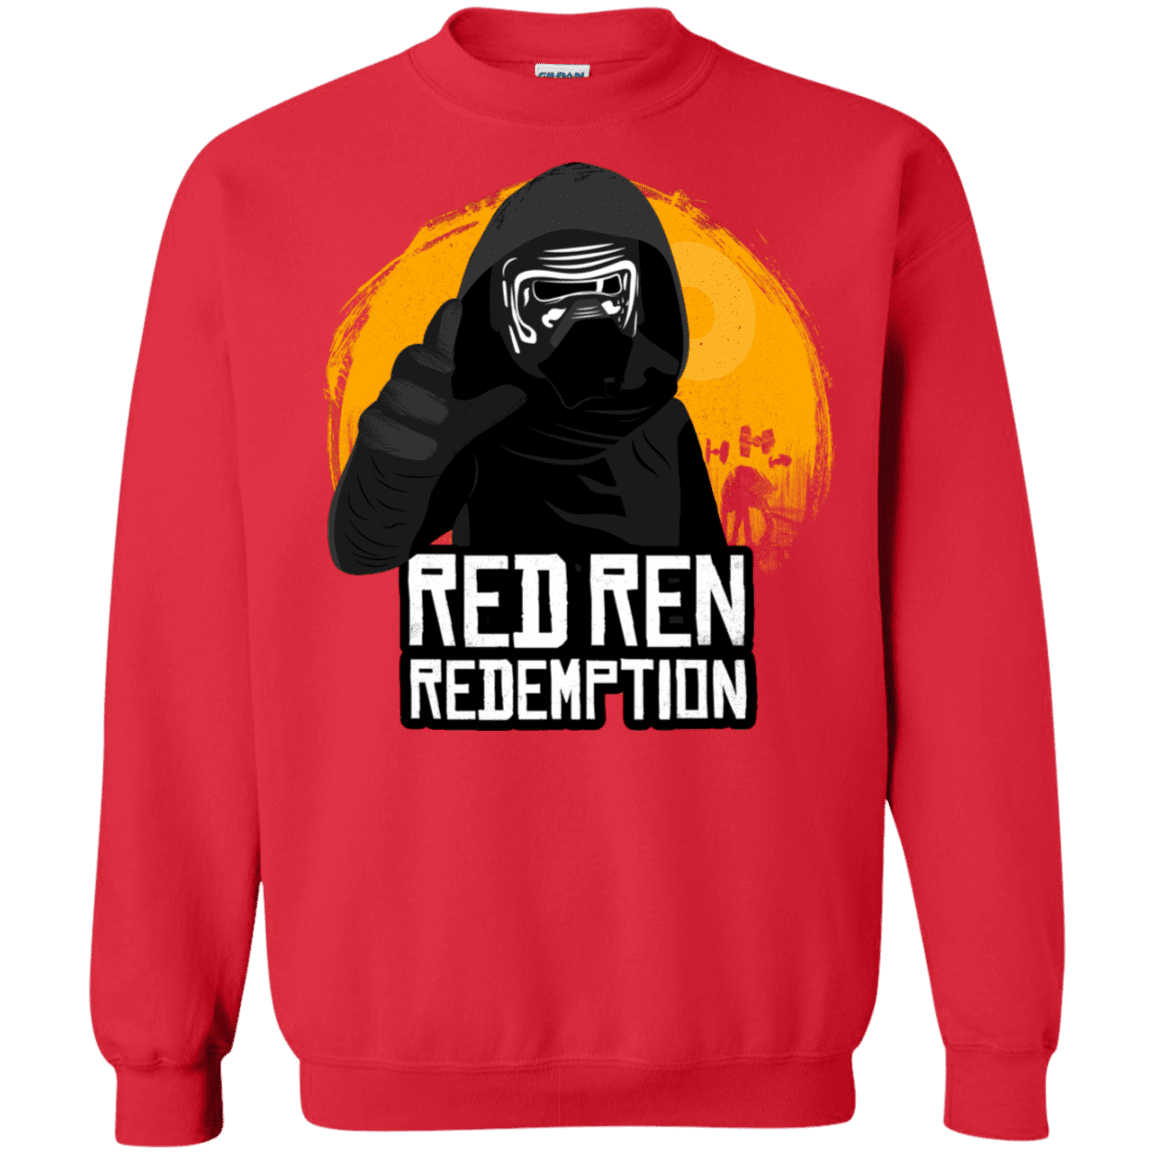 Sweatshirts Red / S Red Ren Crewneck Sweatshirt